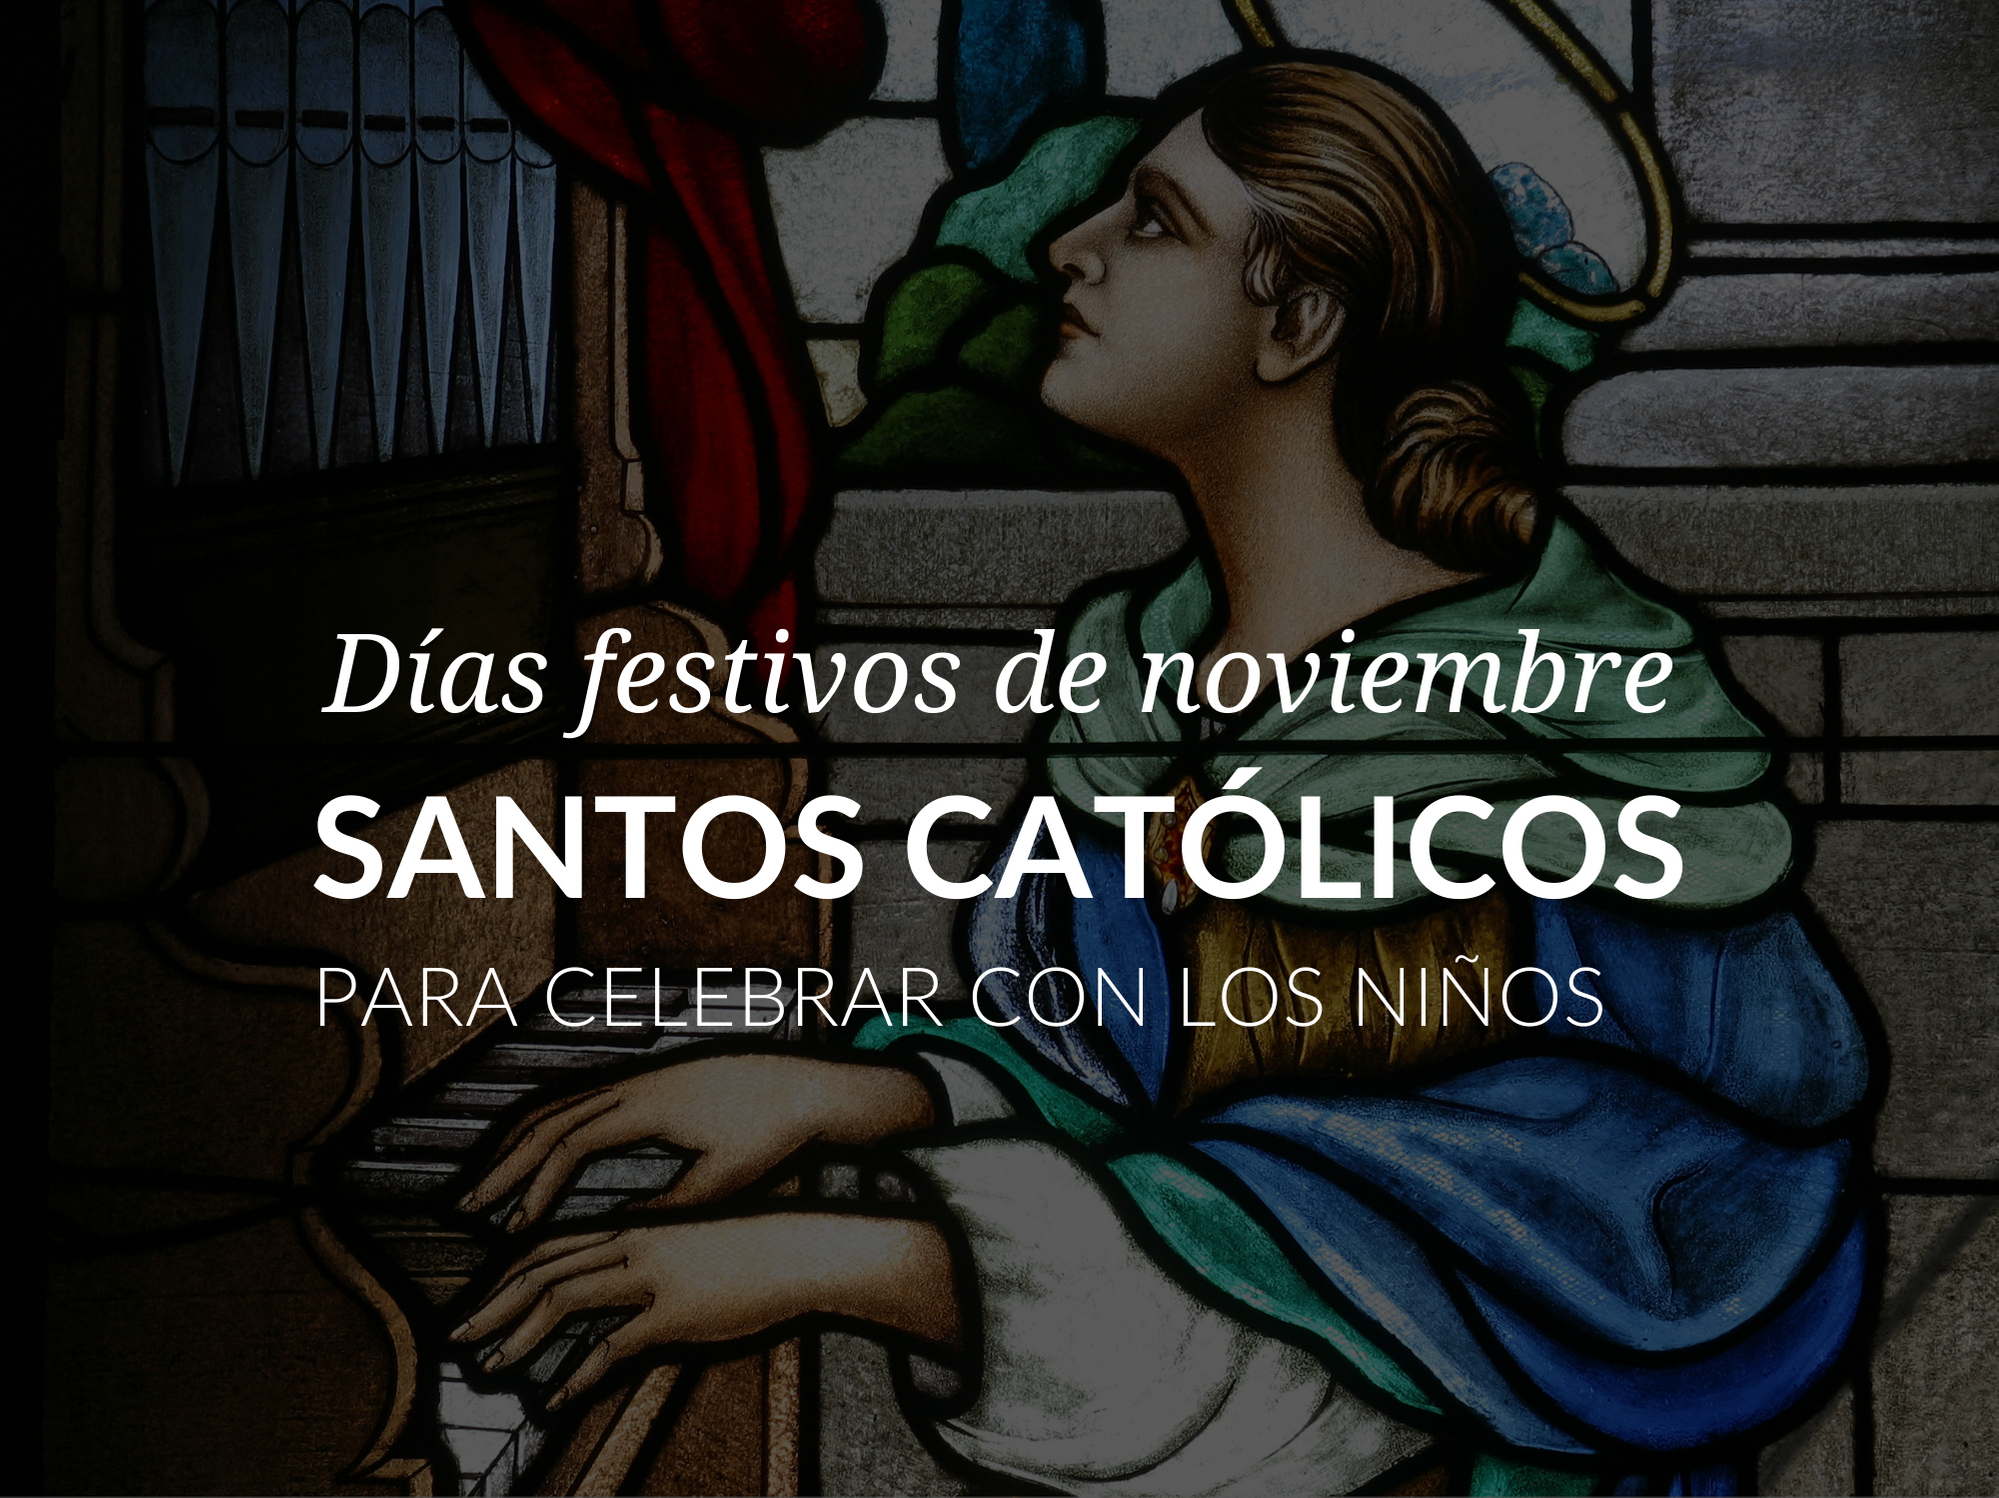 Dias festivos de noviembre: santos catolicos para celebrar con los ninos